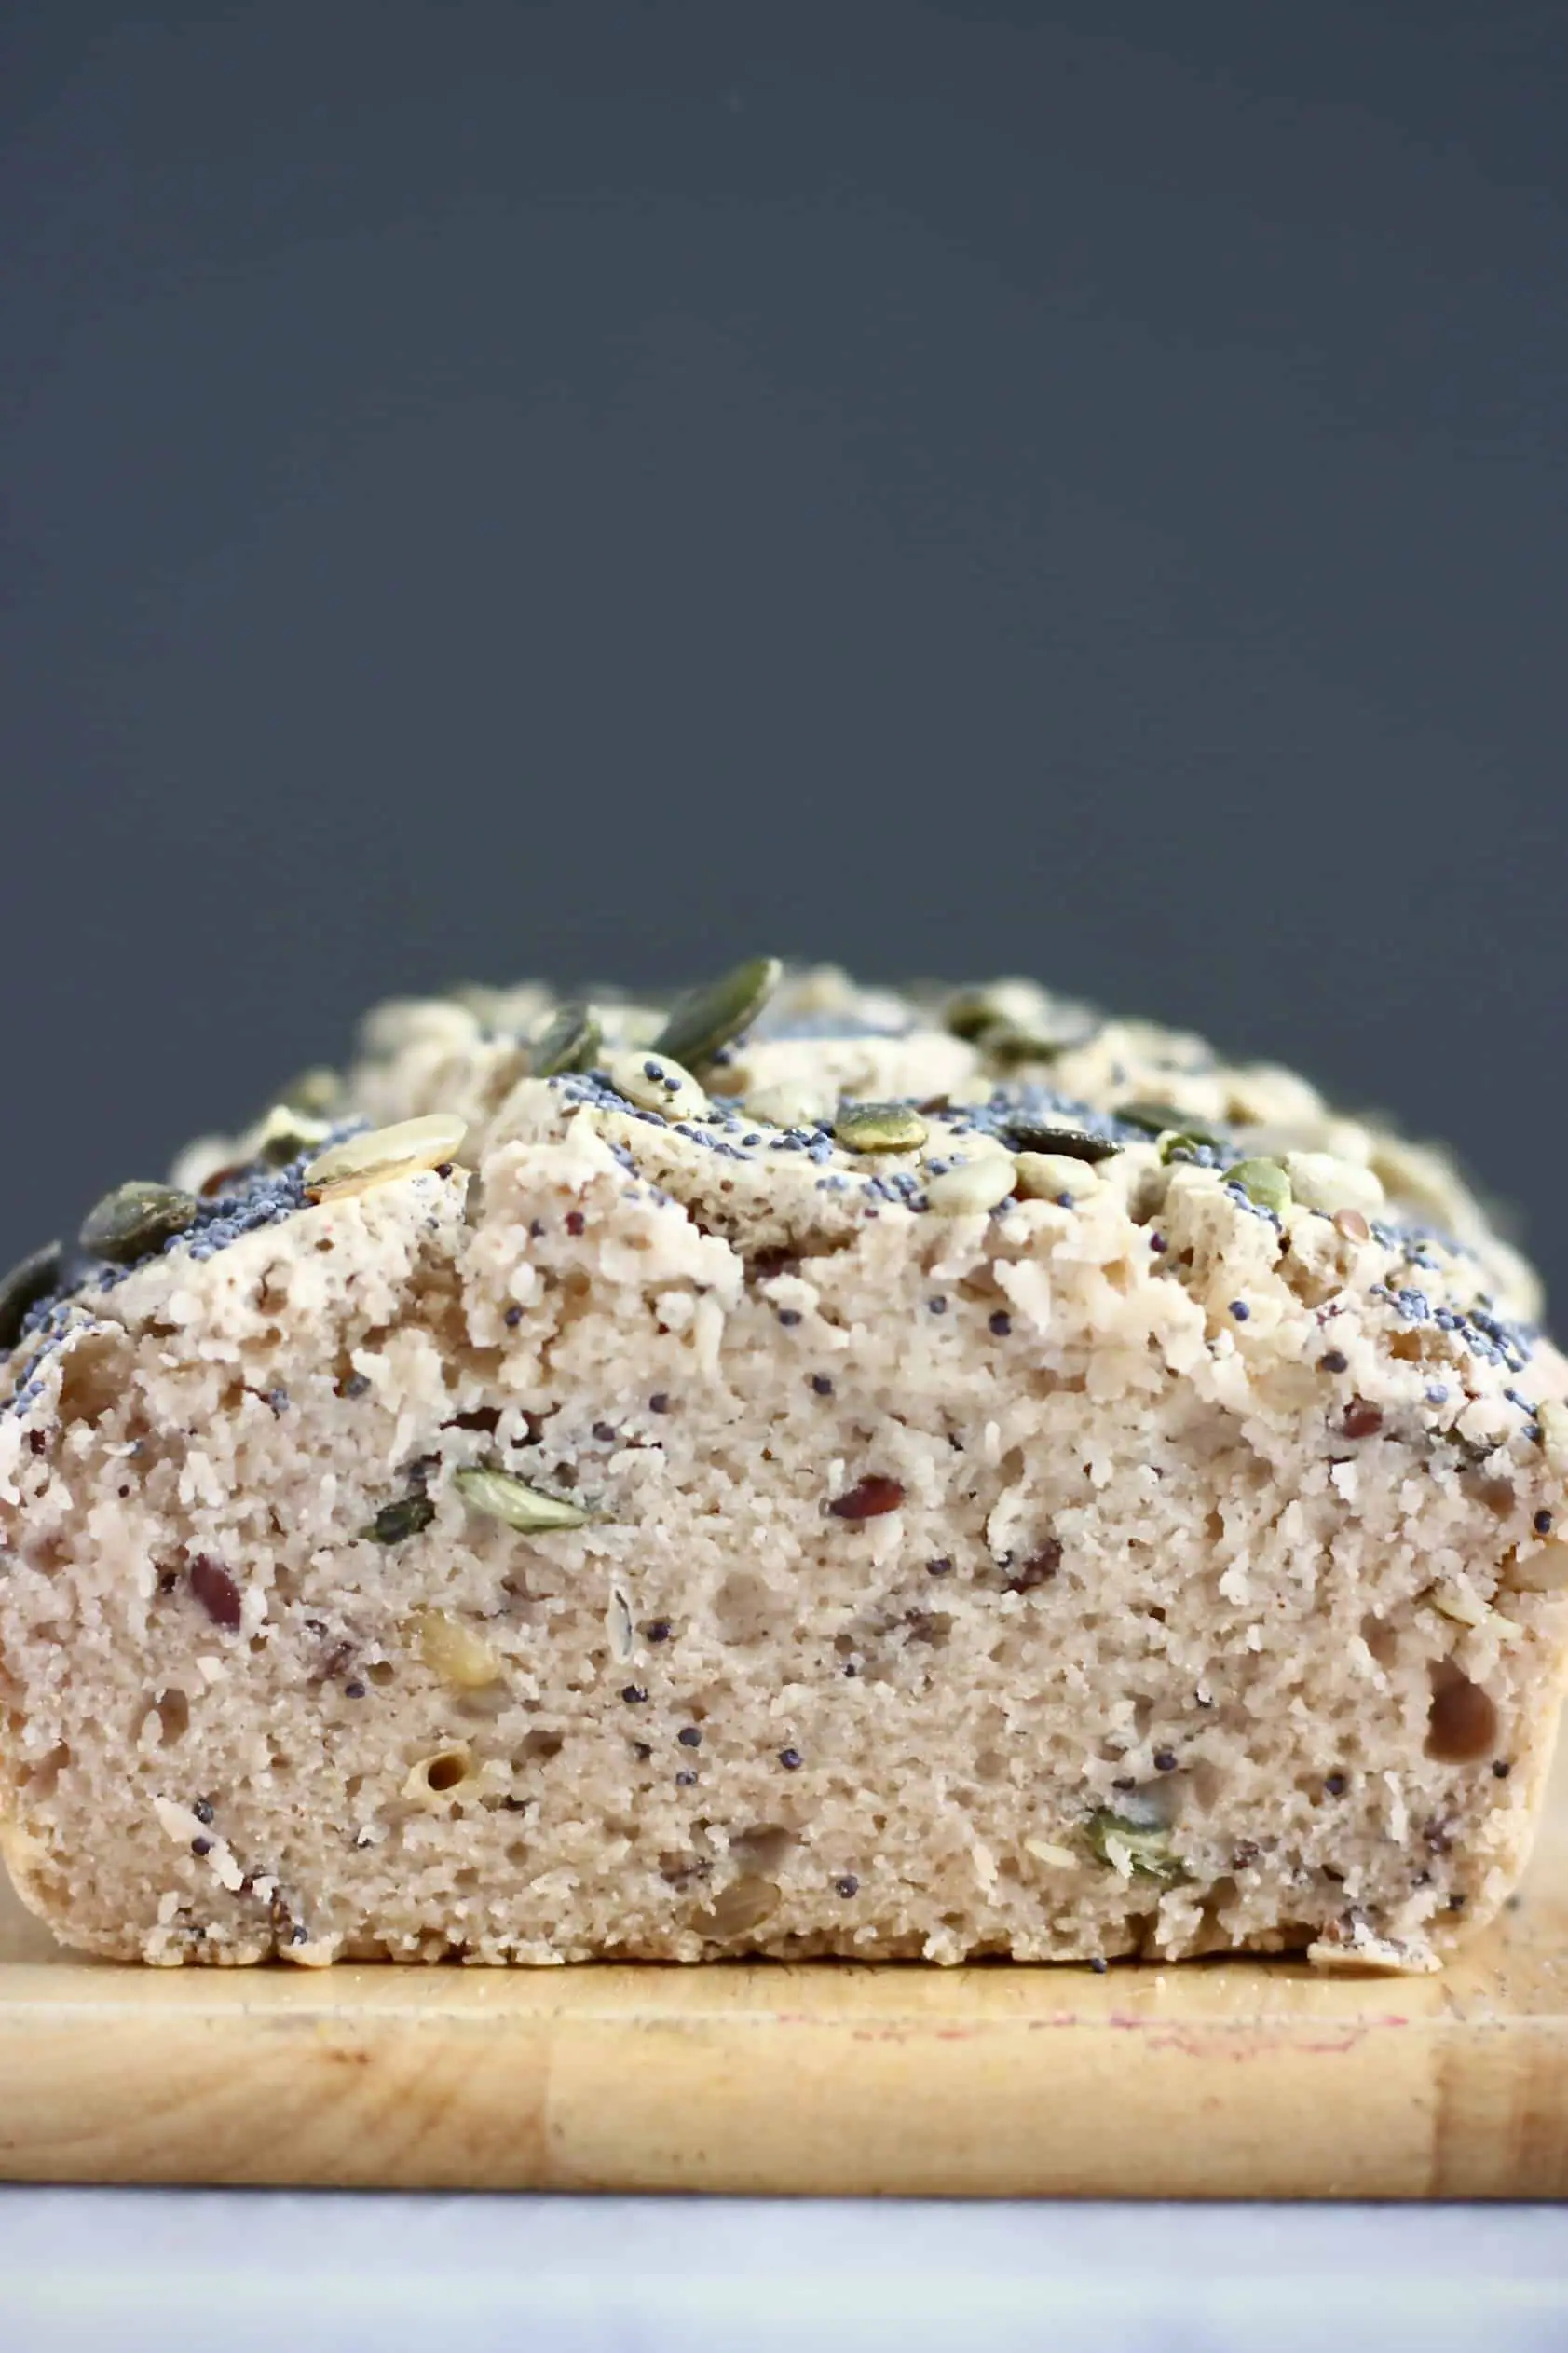 A sliced loaf of Gluten-Free Vegan Seeded Buckwheat Bread on a chopping board against a dark grey background